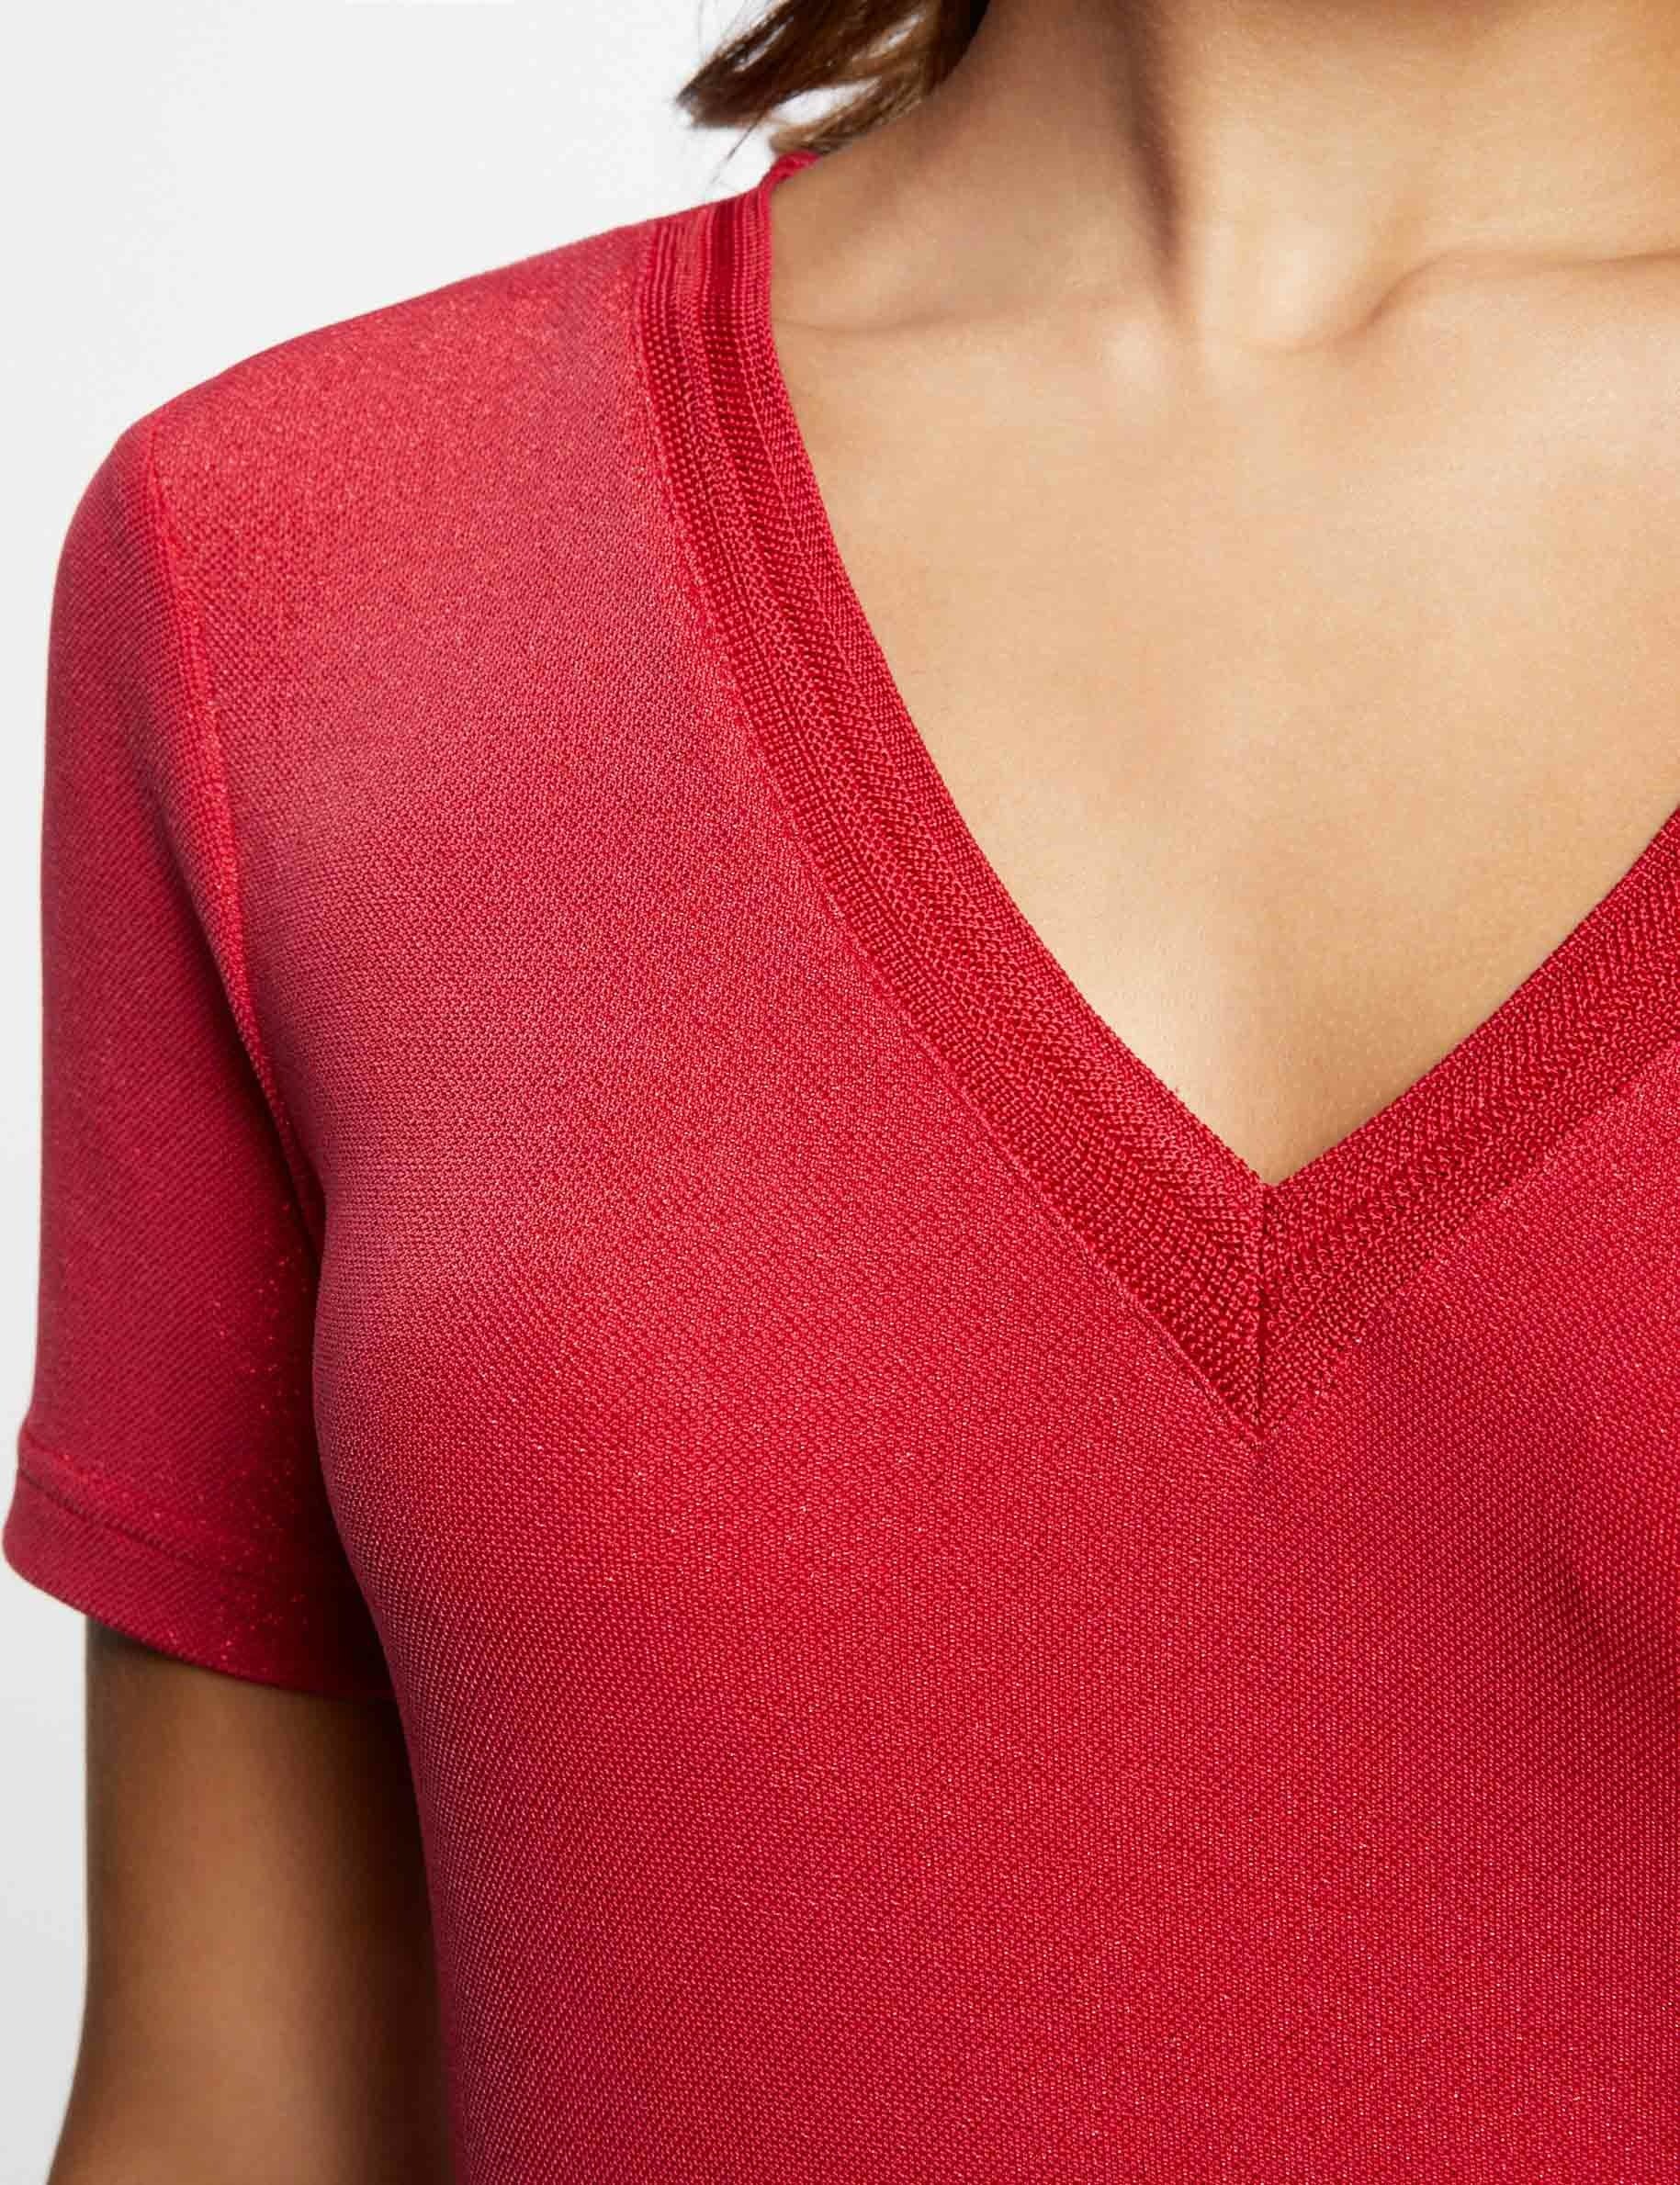 T-shirt manches courtes avec col en V rouge moyen femme